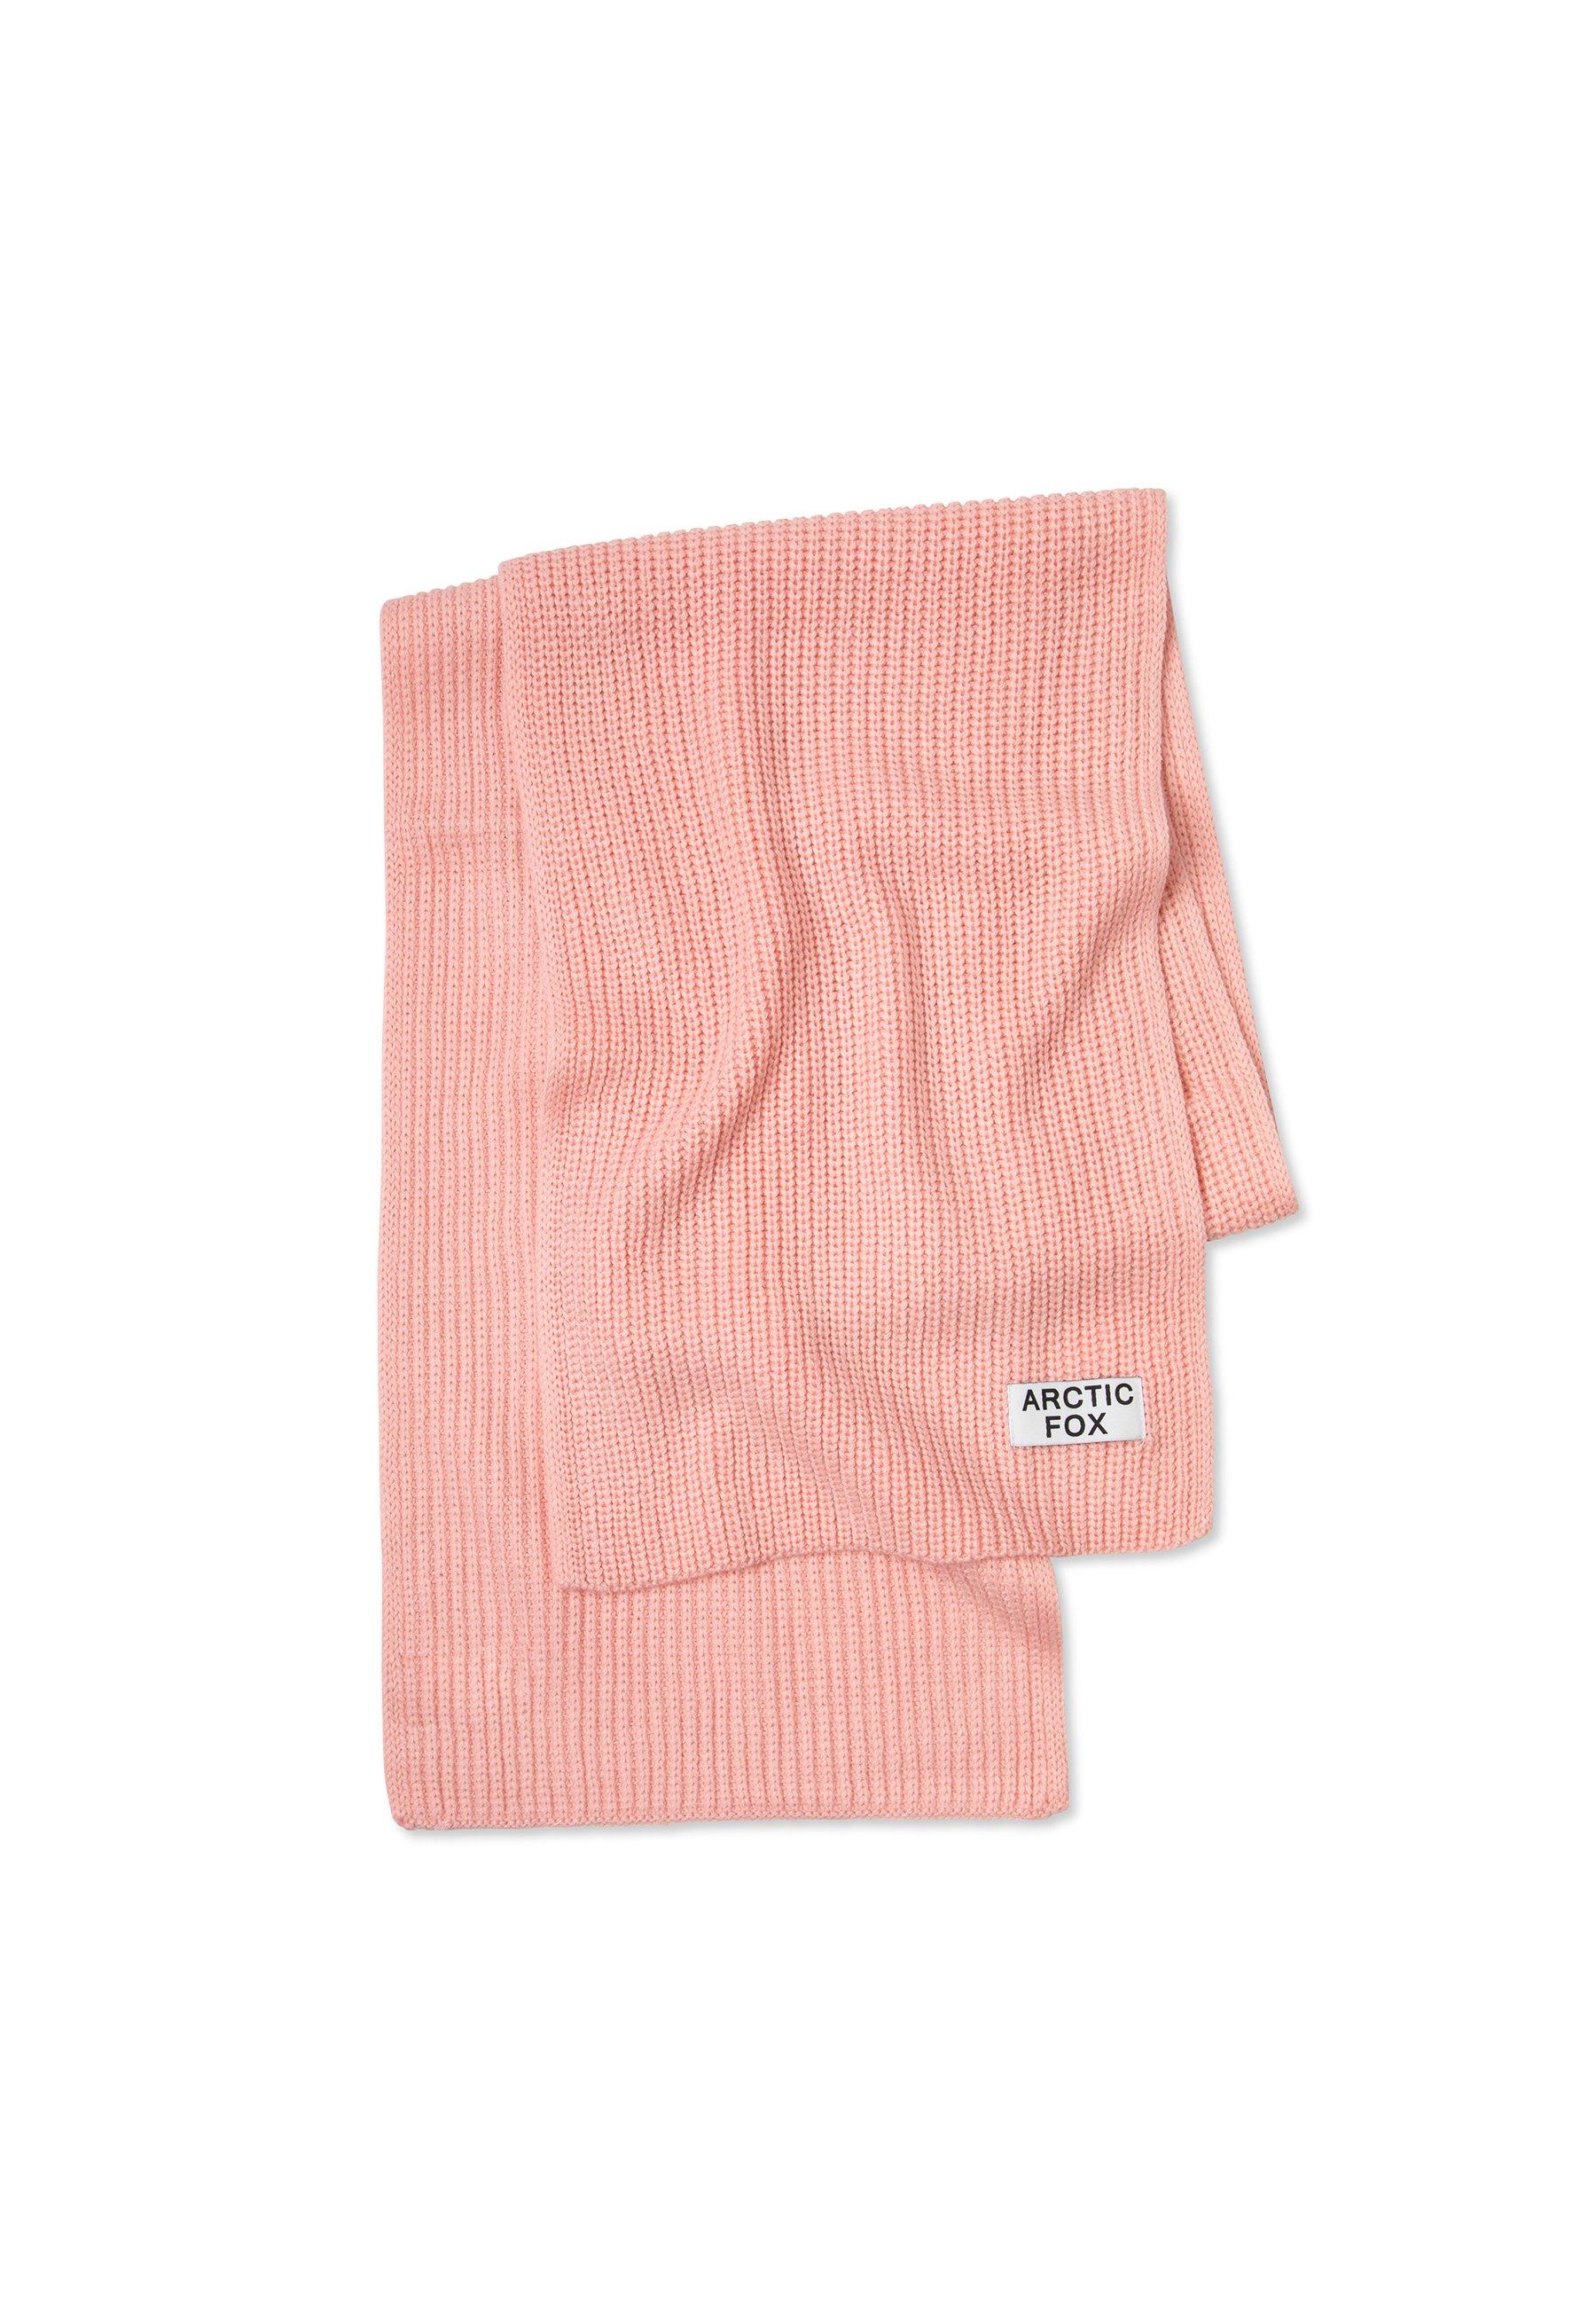 Шарф из переработанной бутылки Arctic Fox & Co., розовый бостон 3d печать имитация кашемира шарф осень и зима утолщенная теплая забавная собака шаль шарф